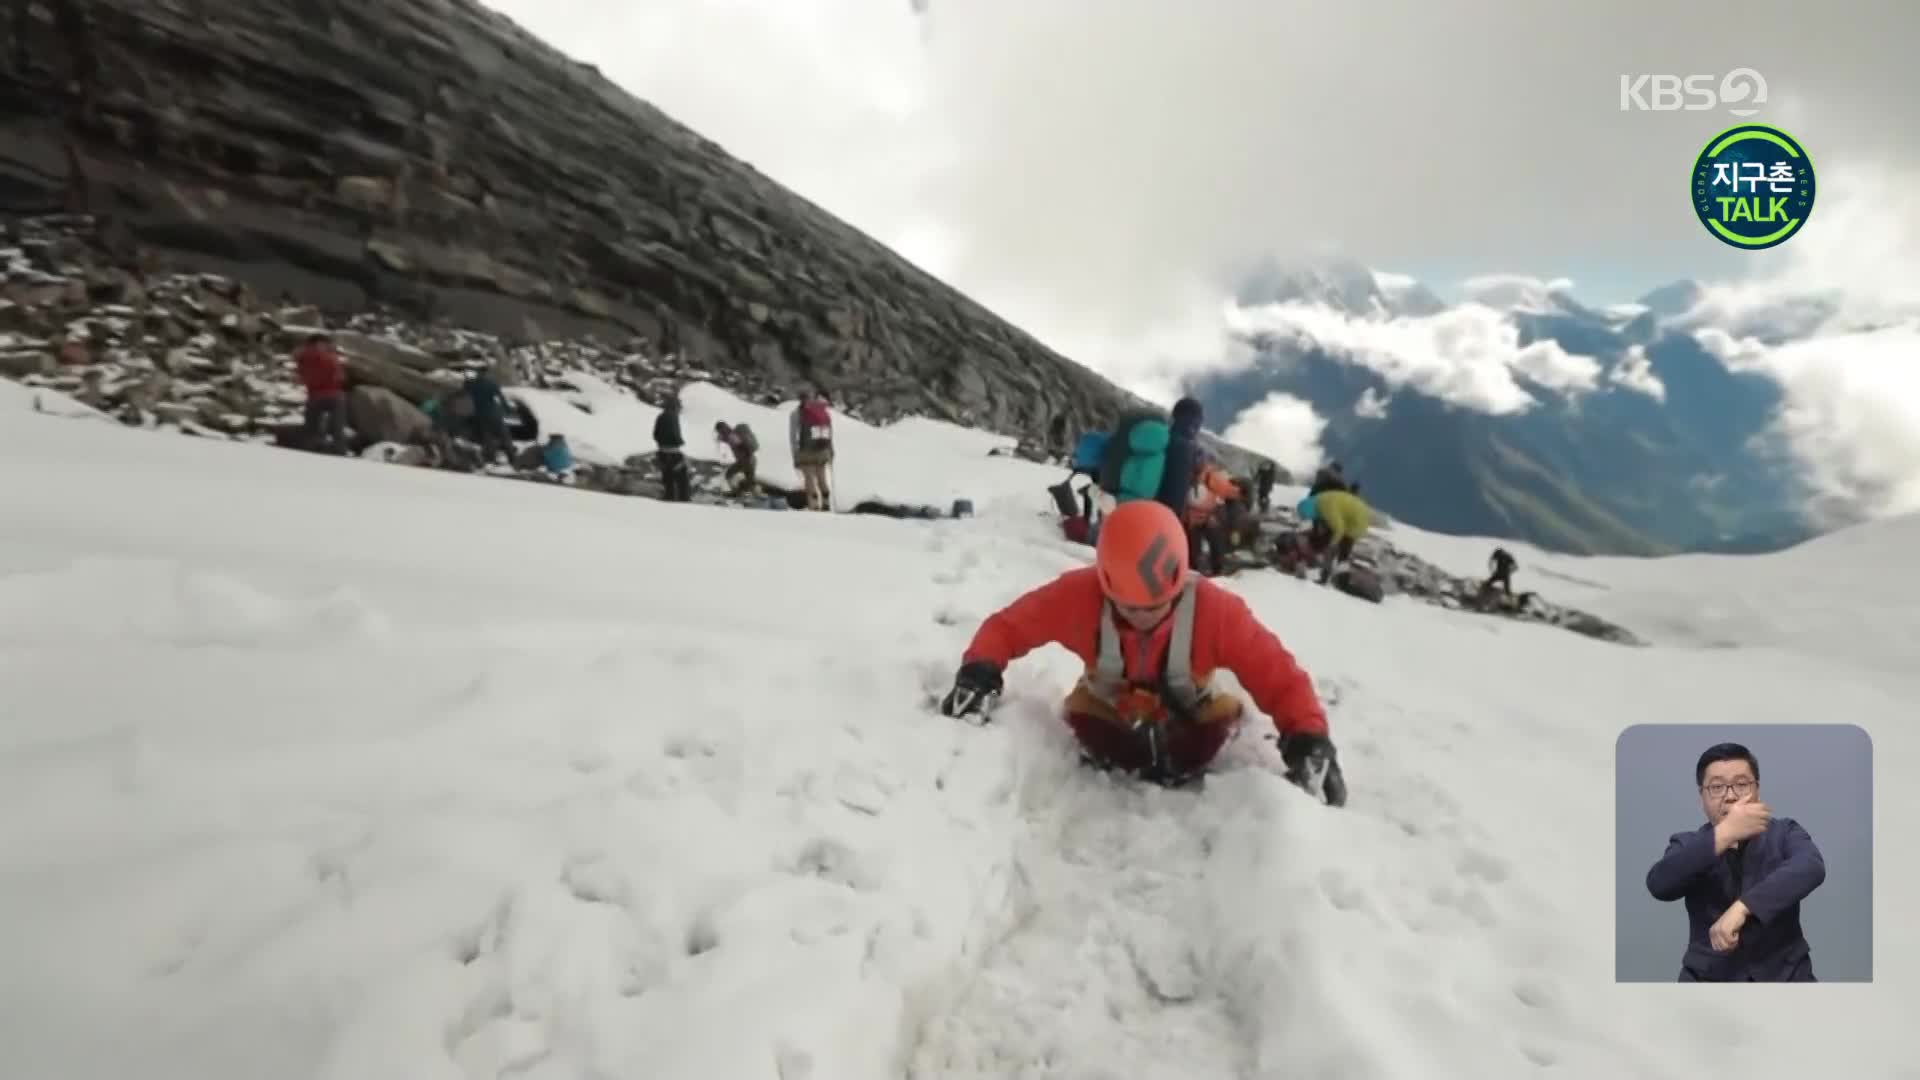 [지구촌 Talk] 두 다리 잃은 남성, 8,000m 산봉우리 등정 성공